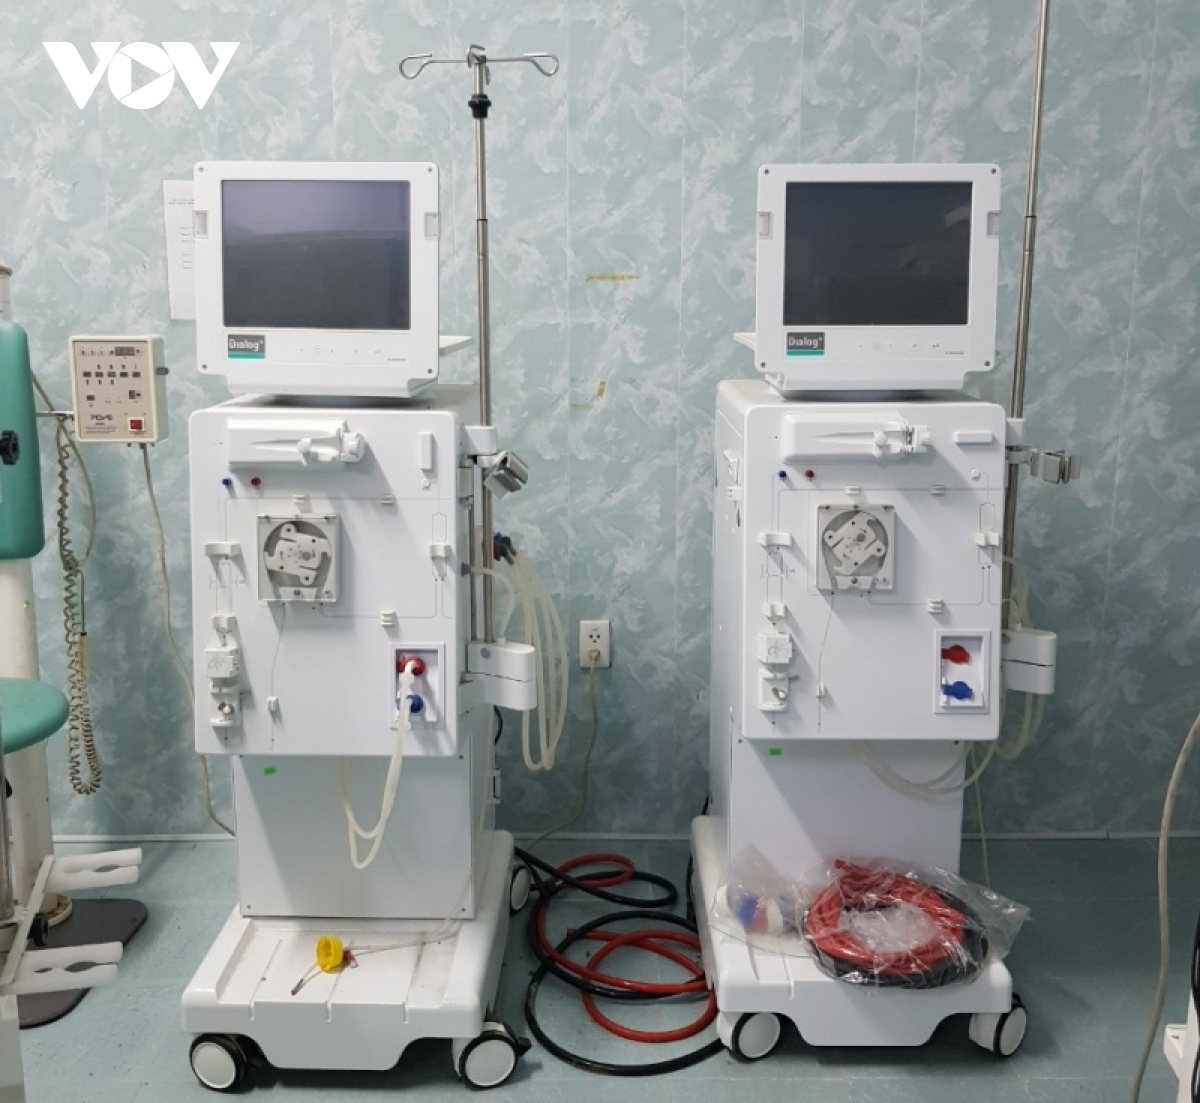 Thiết bị máy móc hiện đại tại Bệnh viện Đa khoa Chân Mây nằm đắp chiếu - Ảnh 2.